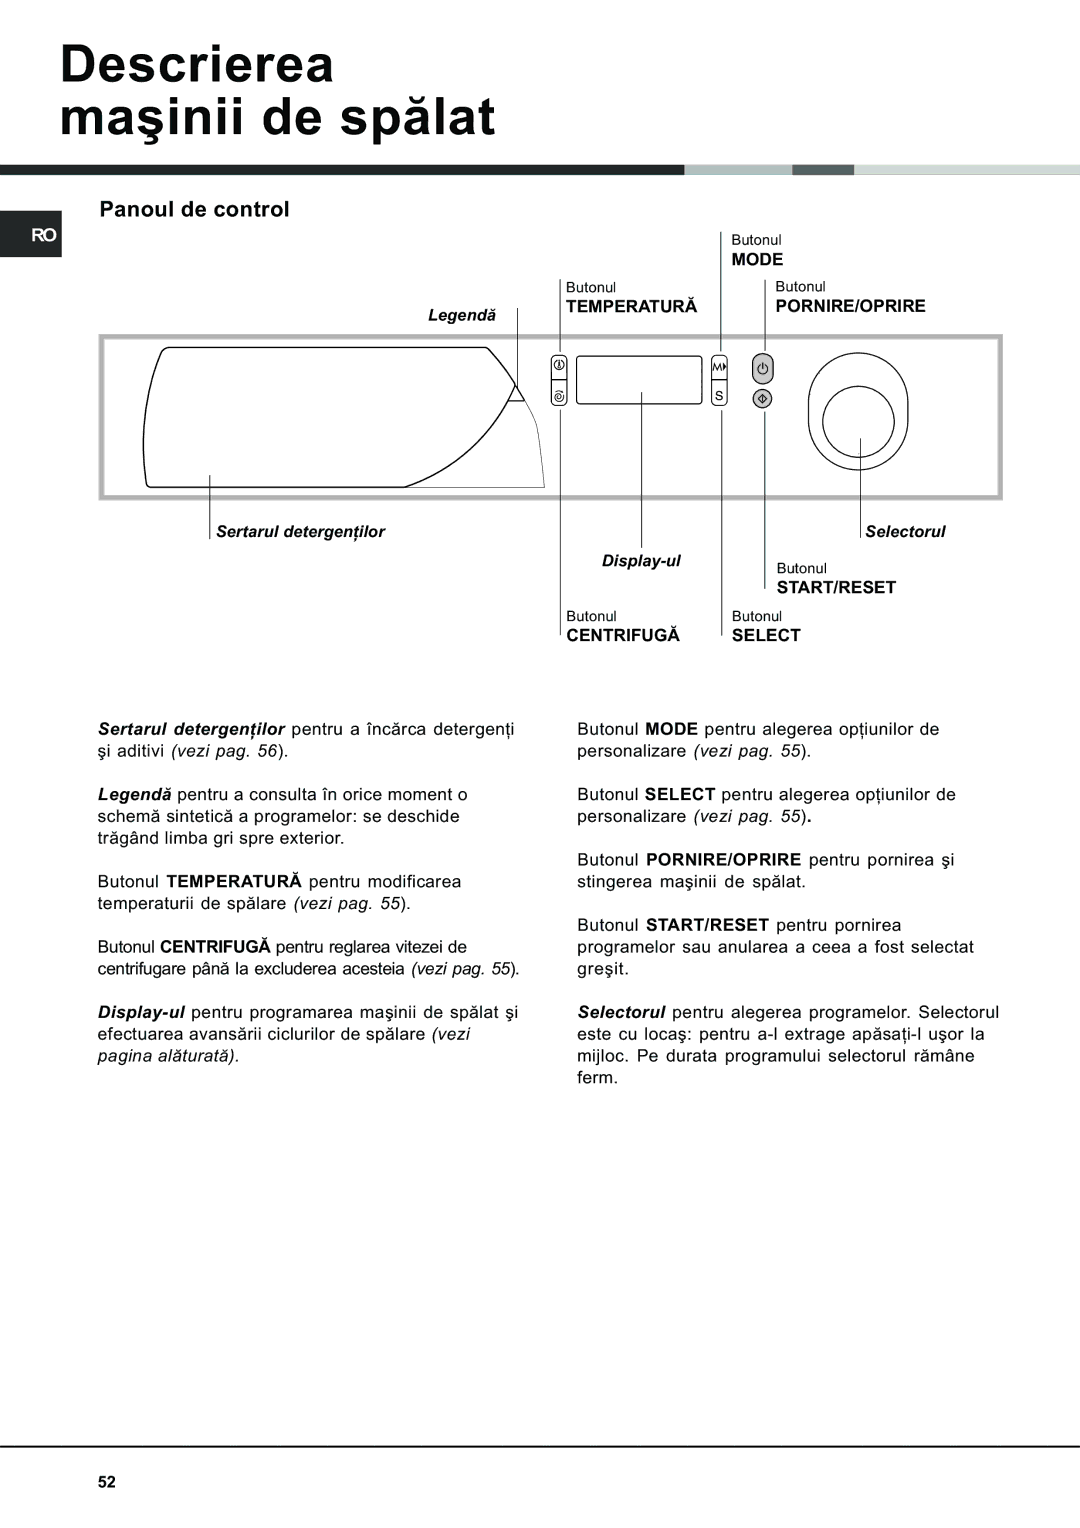 Ariston AVSD 109 manual Descrierea maºinii de spãlat, Panoul de control, Sertarul detergenþilor Display-ul, Selectorul 